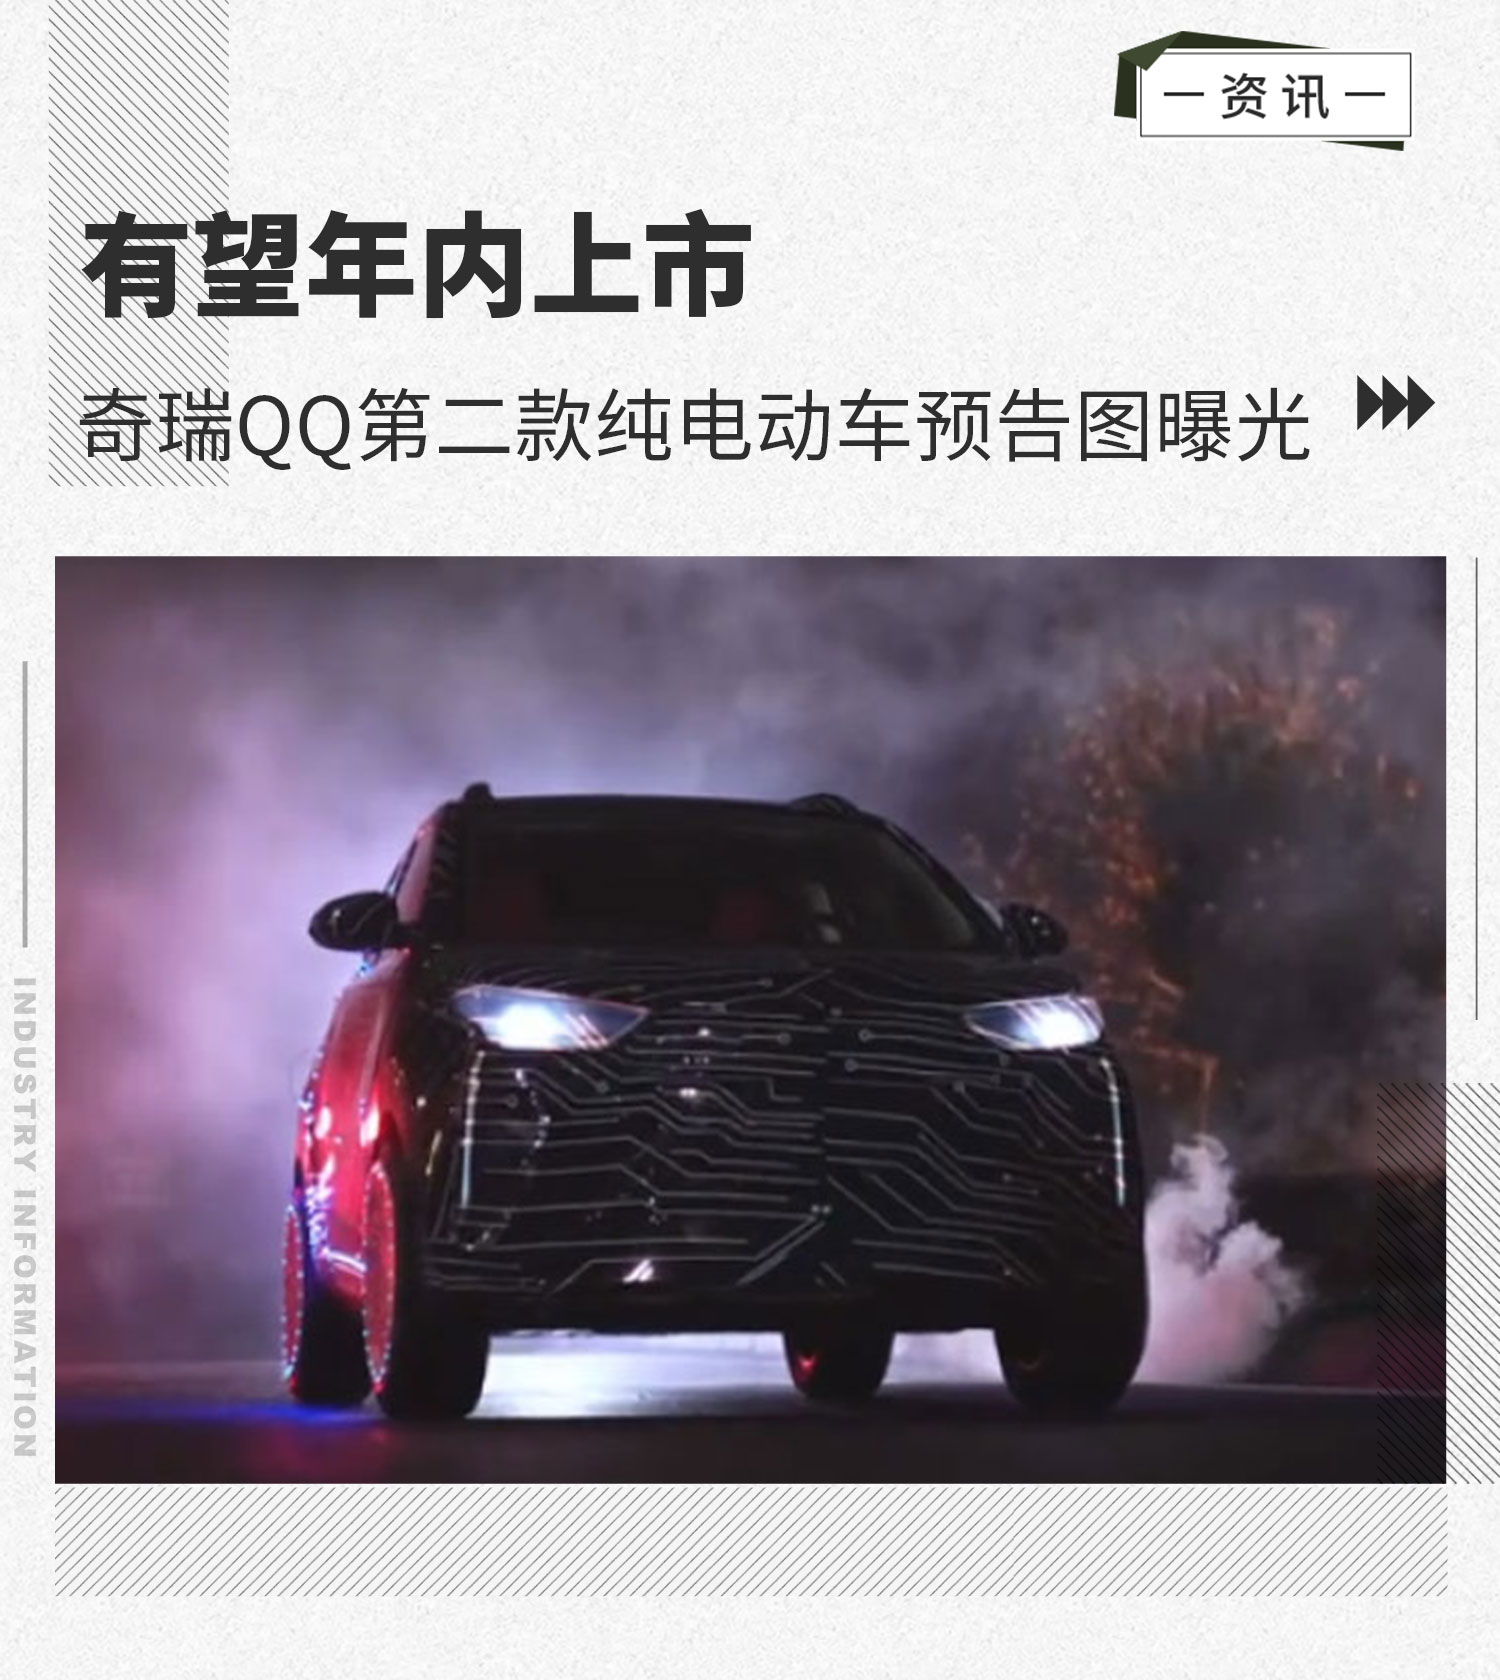 有望年内上市 奇瑞QQ第二款纯电动车预告图曝光